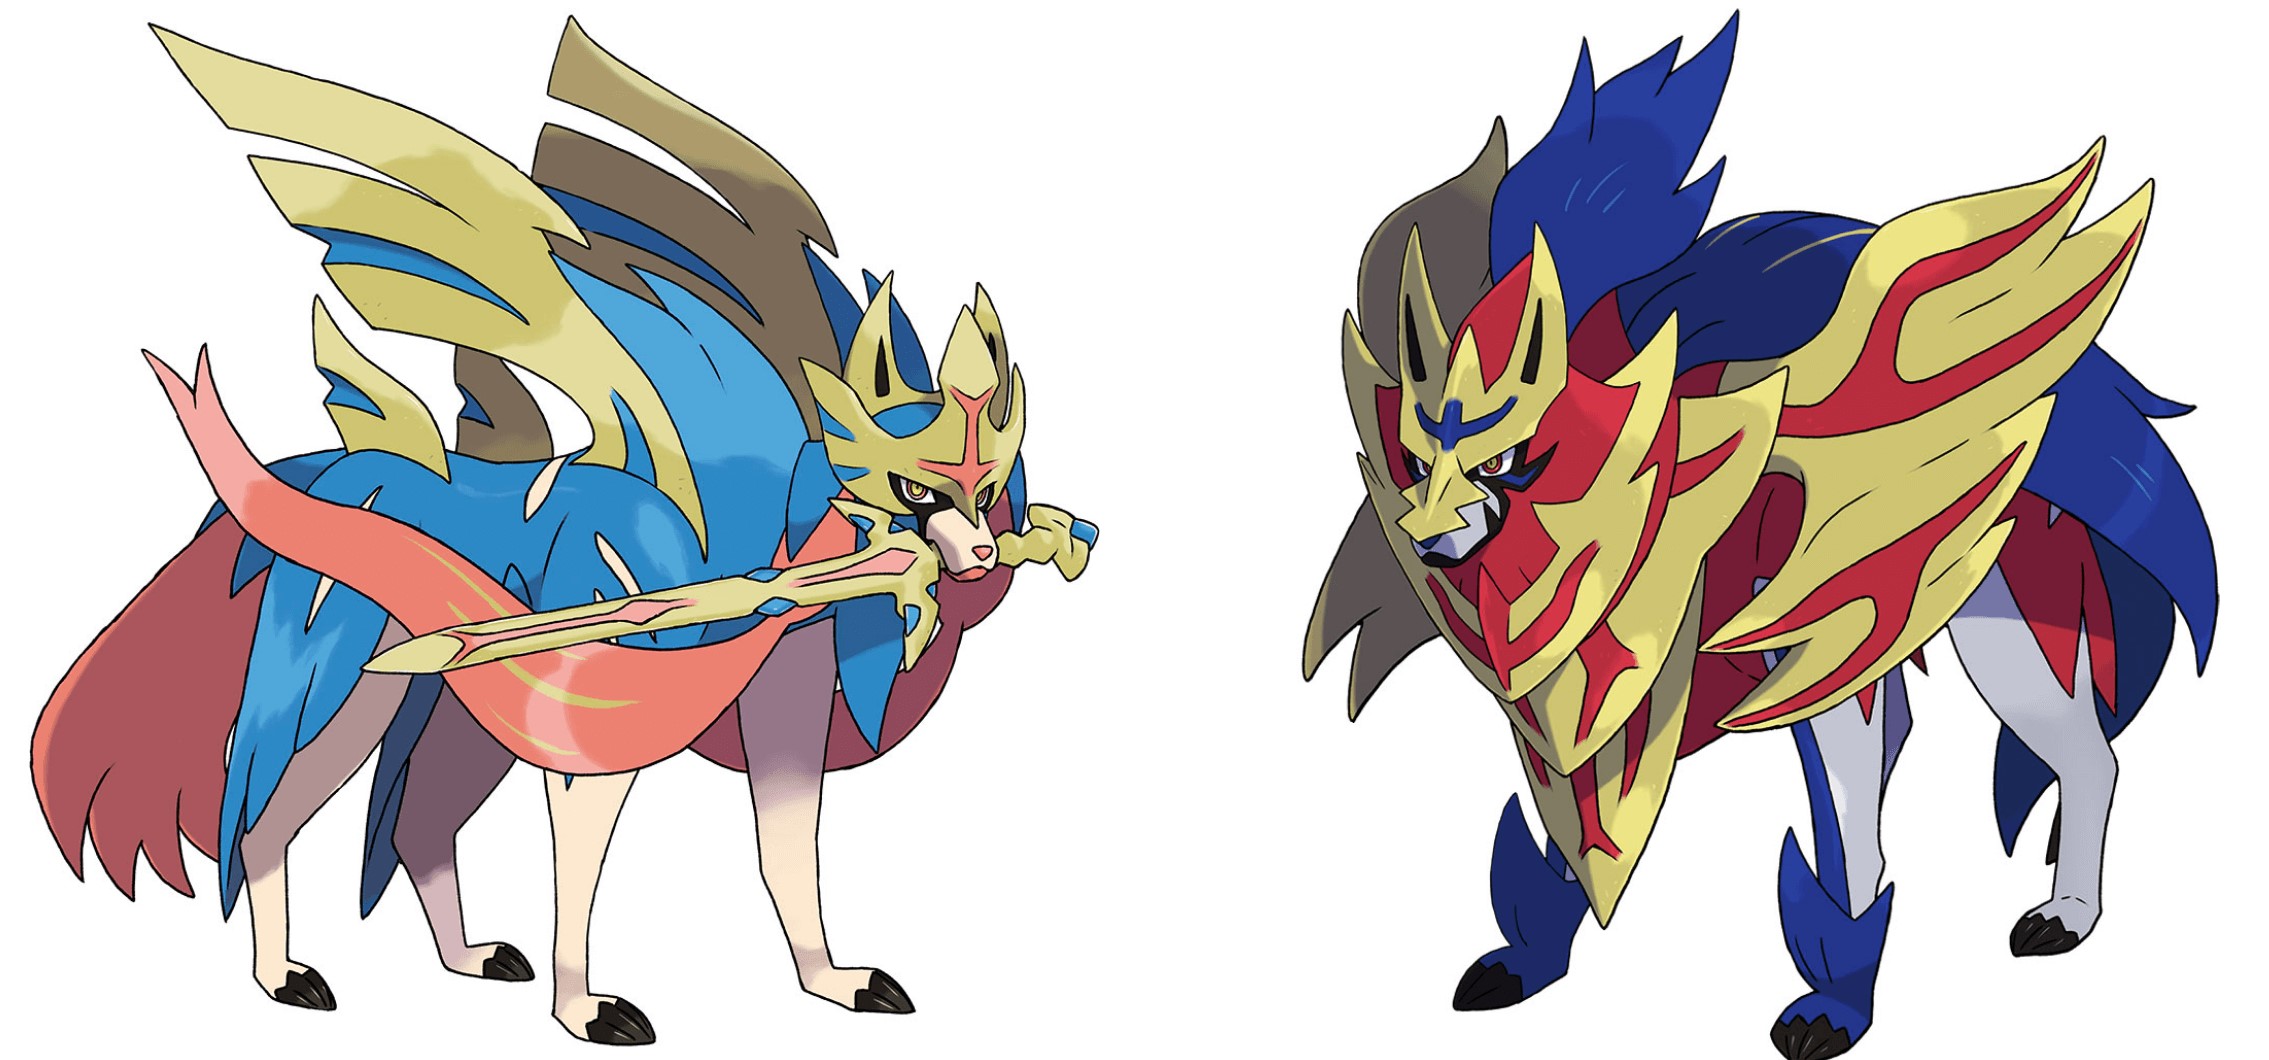 ◓ Pokémon Sword/Shield (Wild Area News): Pokémon do tipo Fada e tipo Voador  invadem a área, além de dois monstrinhos Gigantamax, confira os detalhes